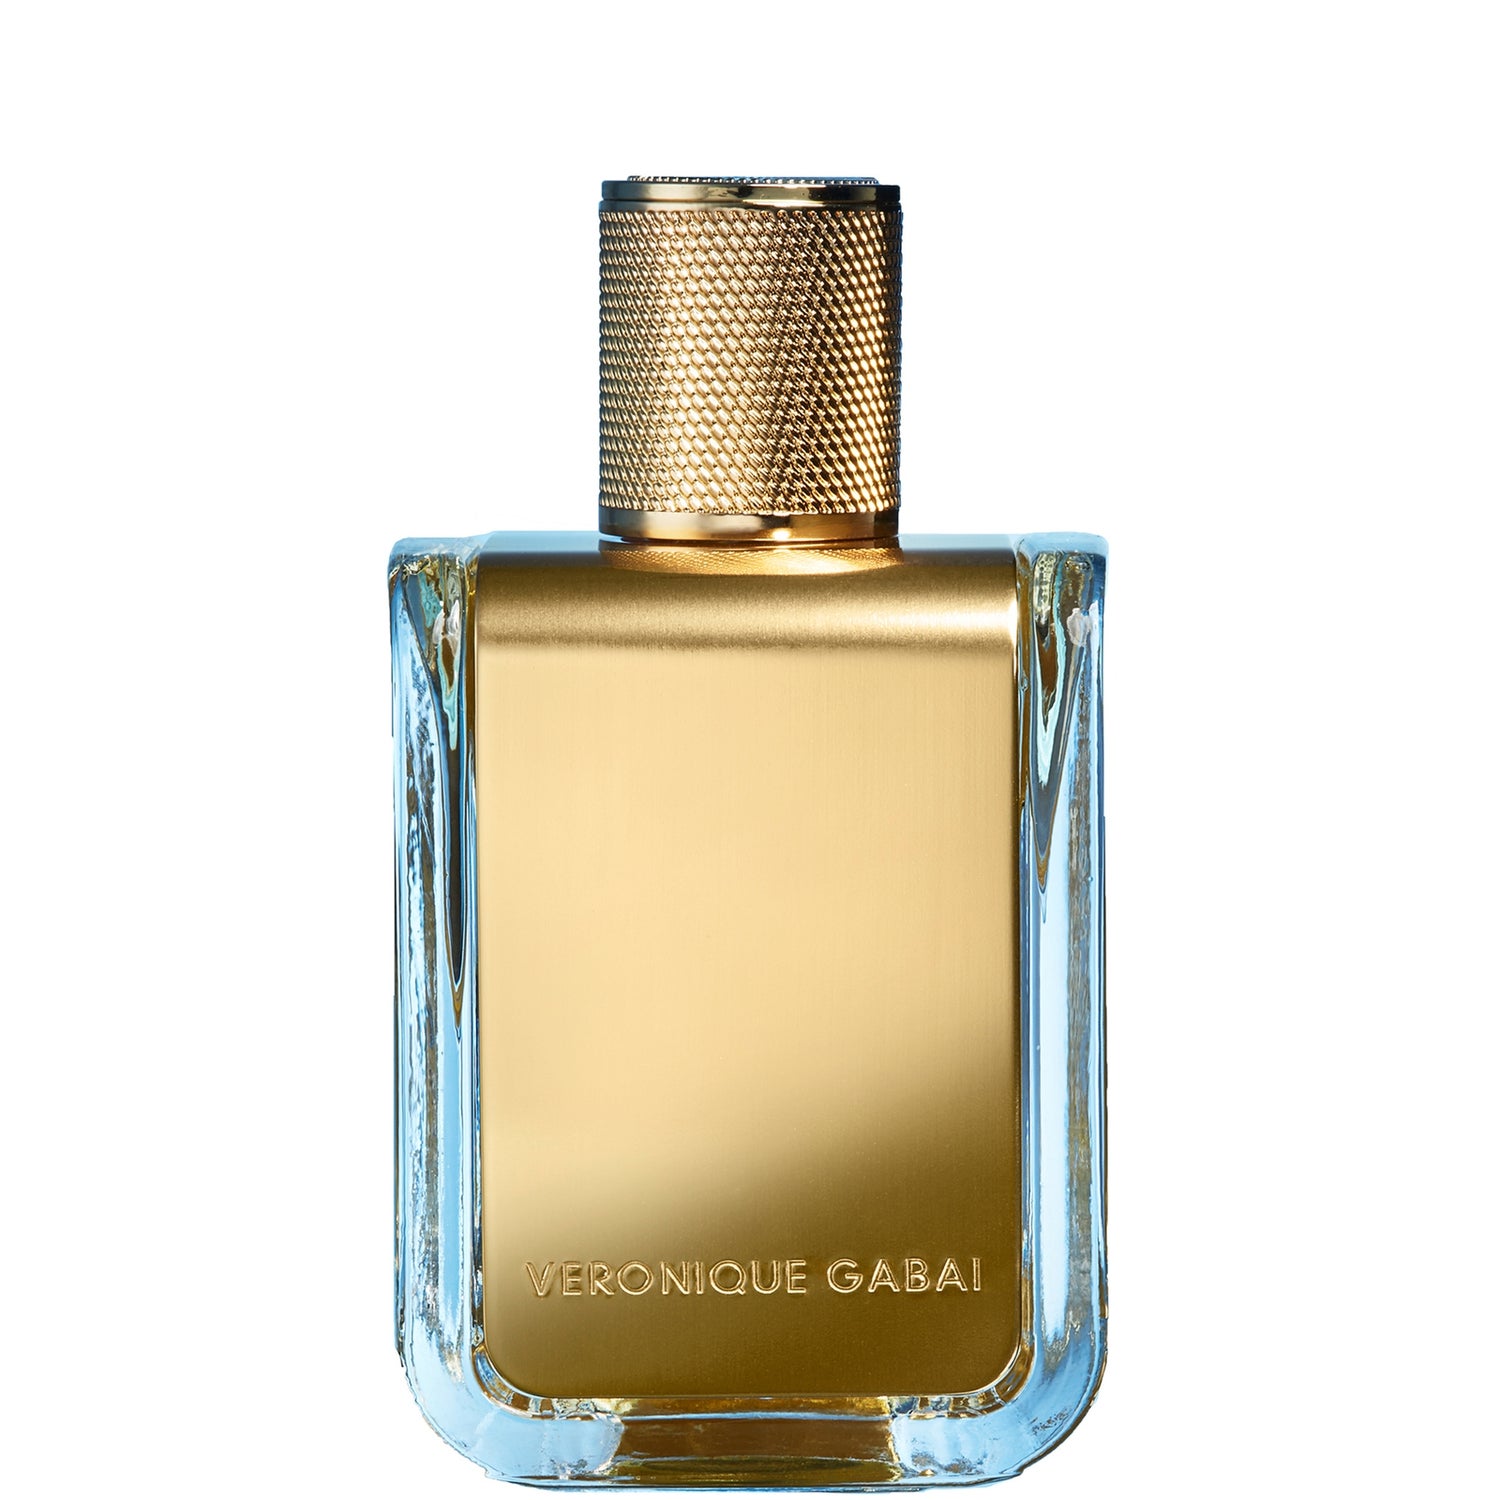 Veronique Gabai Noire De Mai Eau de Parfum 85ml